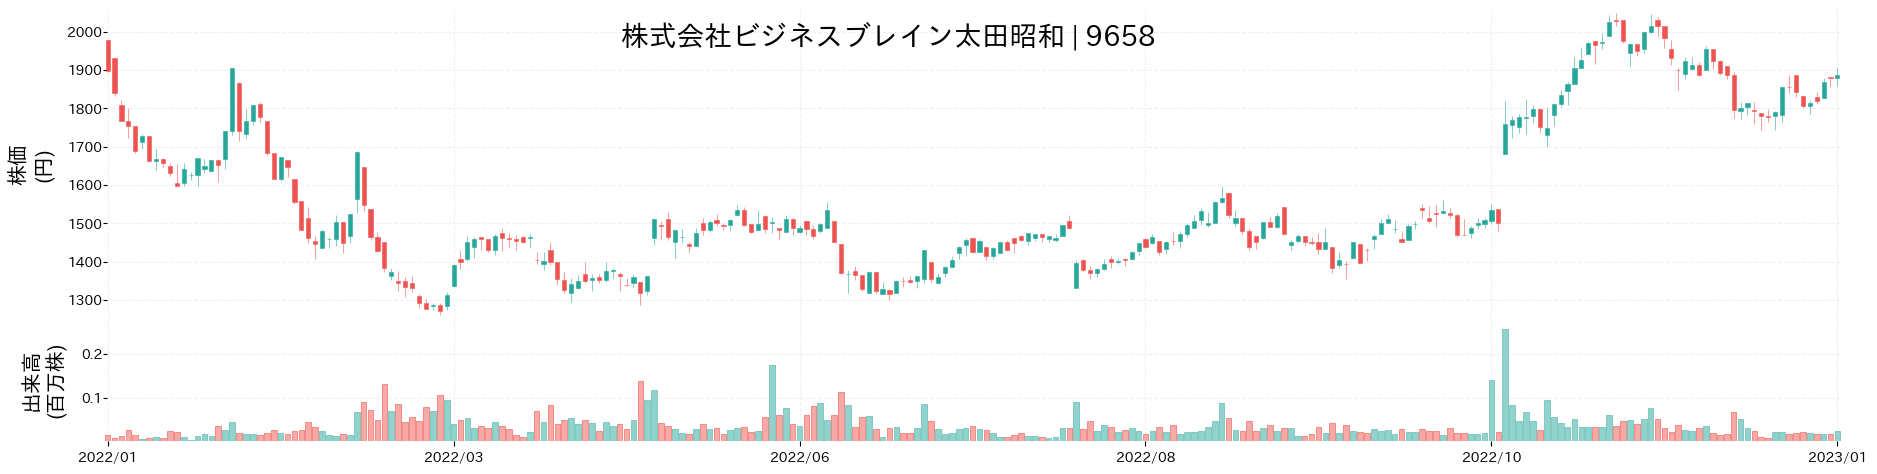 ビジネスブレイン太田昭和の株価推移(2022)